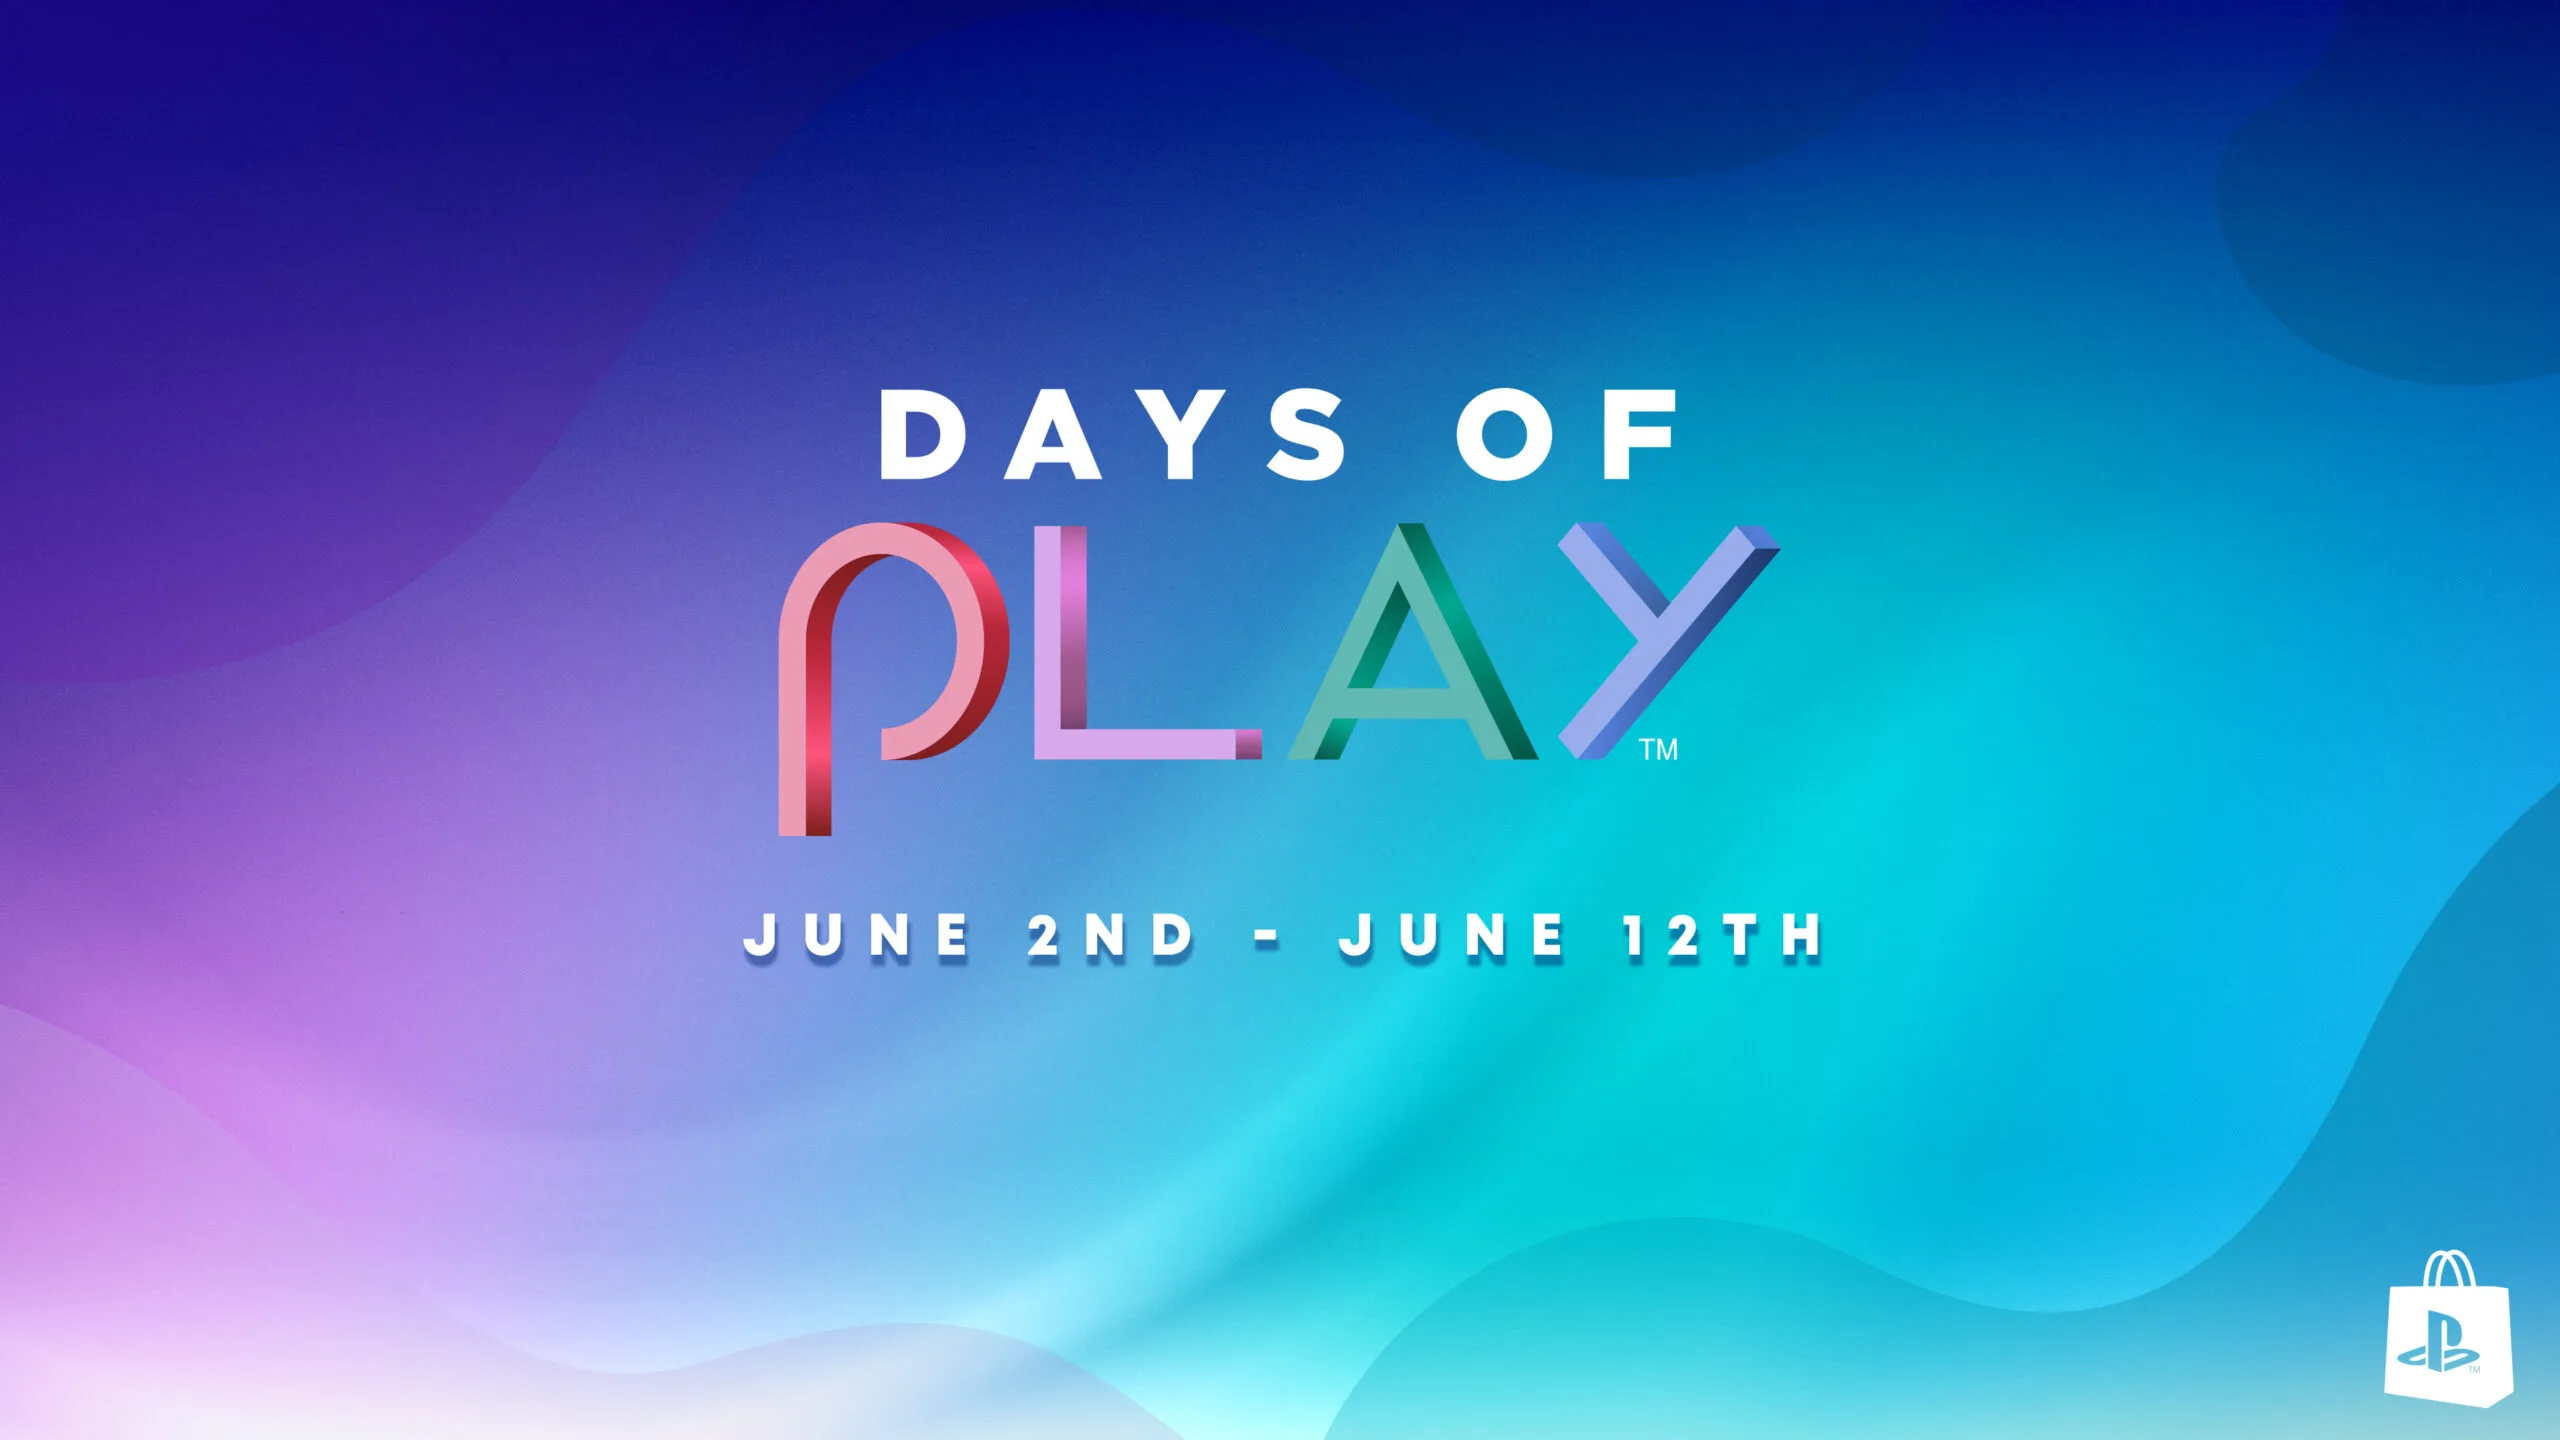 Время играть картинки. Время играть. PLAYSTATION Days of Play. Days of Play 2020 ПС плюс. PLAYSTATION время играть 2020.